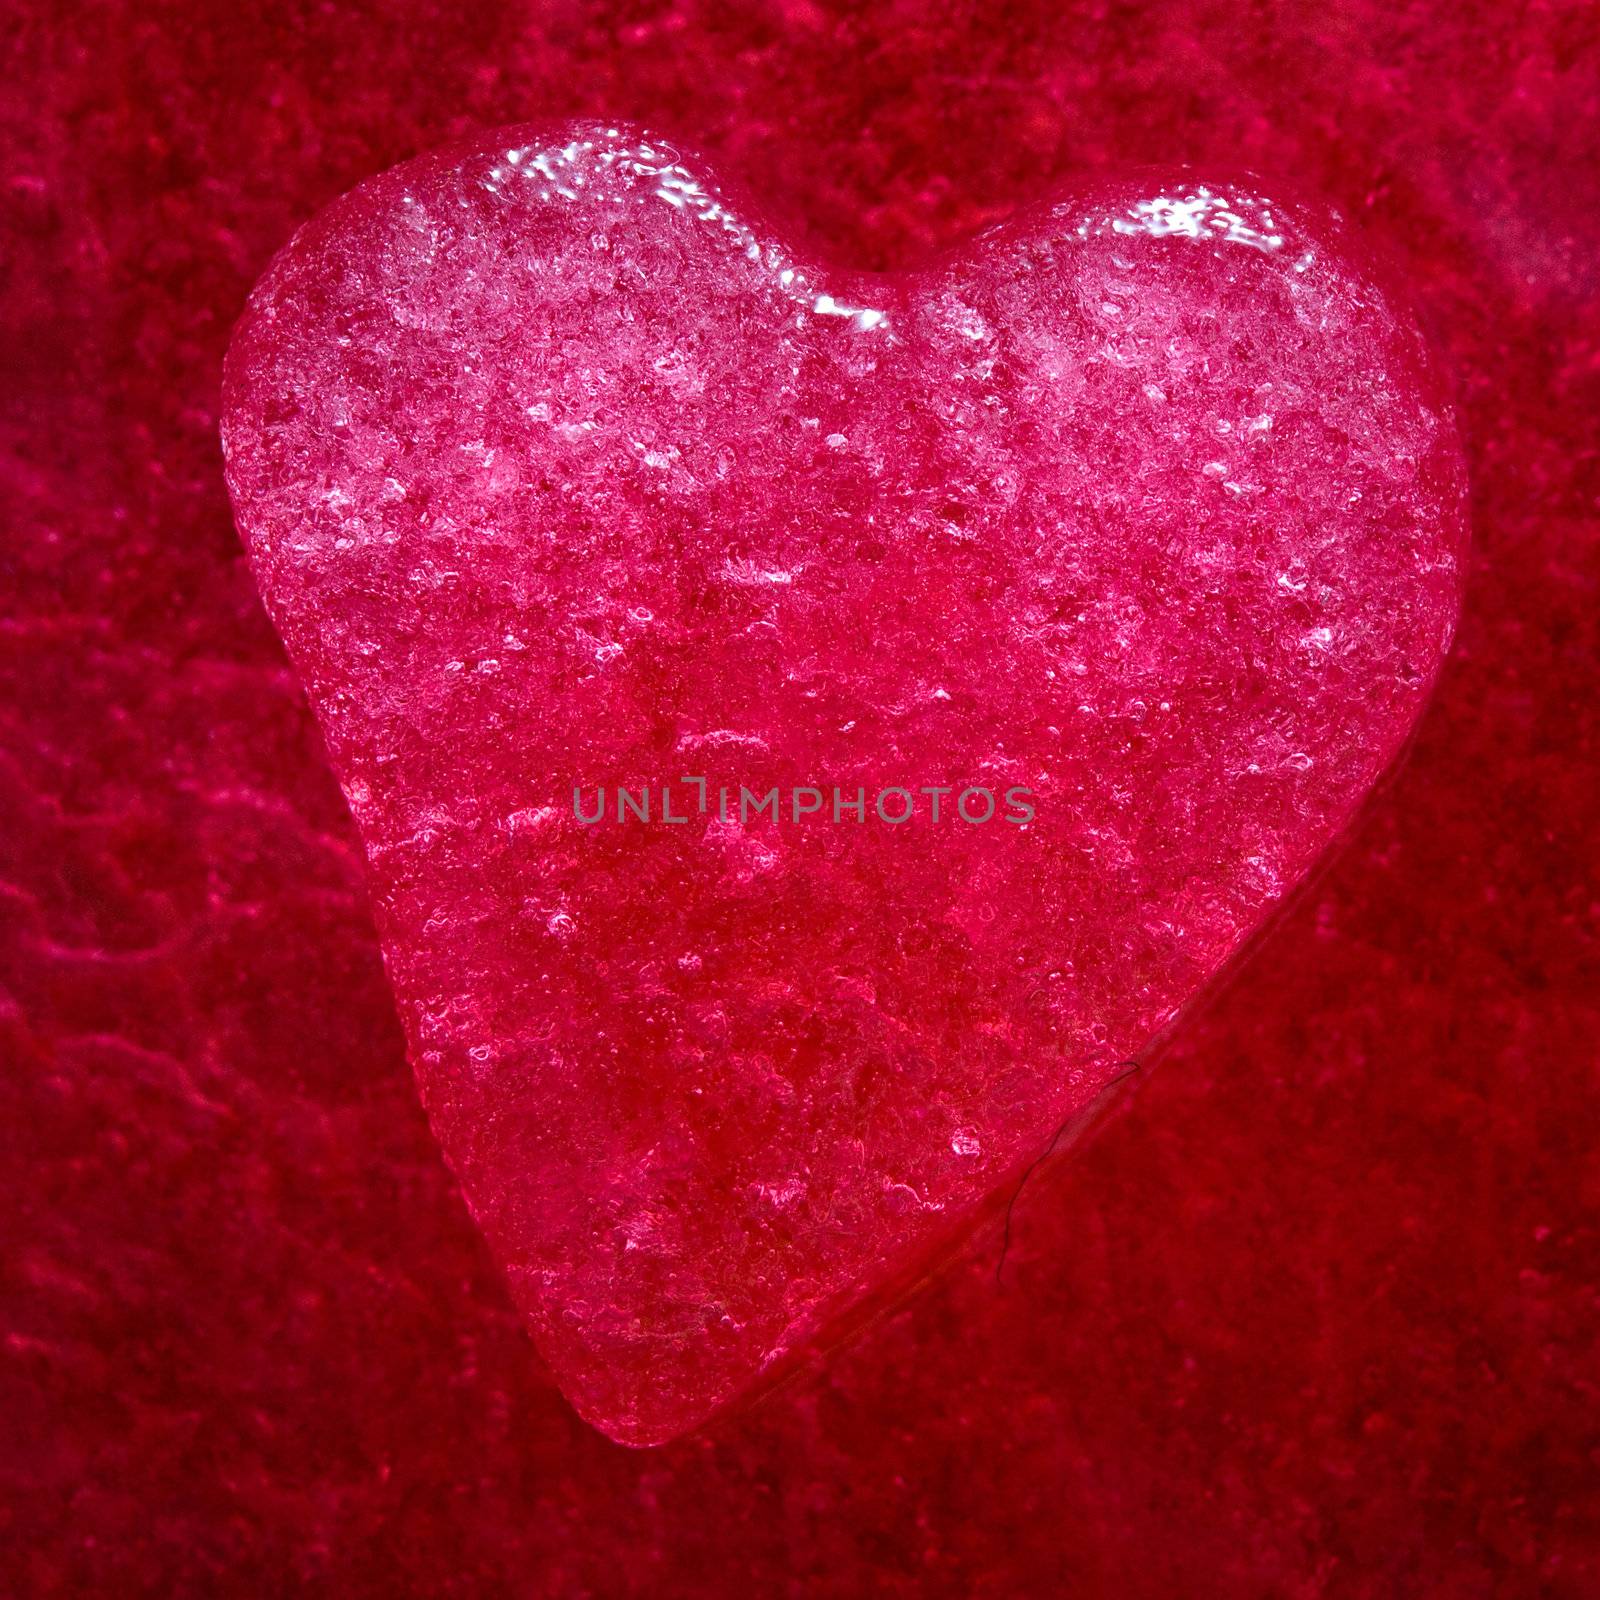 Red heart by velkol